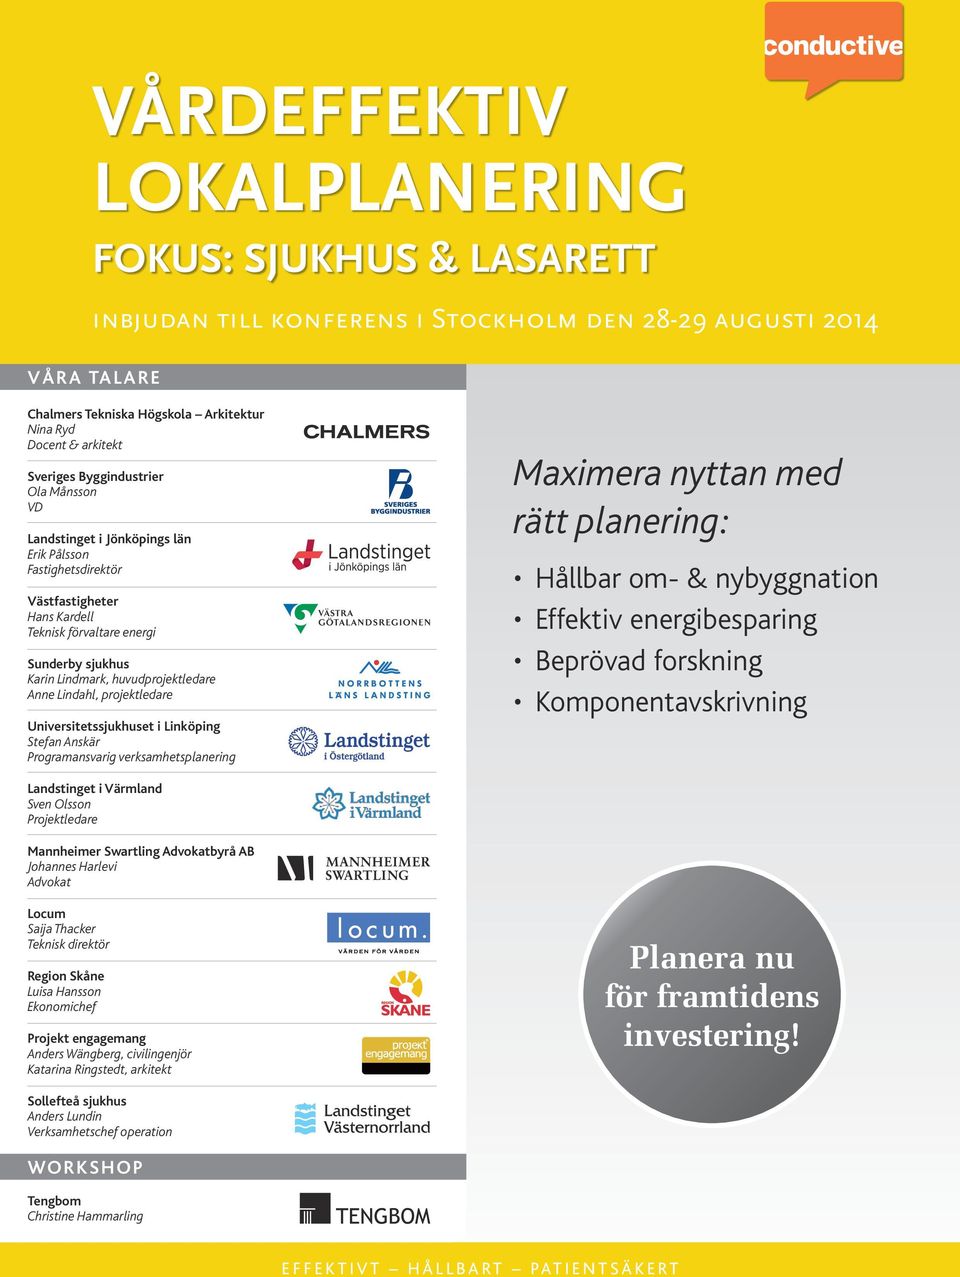 Universitetssjukhuset i Linköping Stefan Anskär Programansvarig verksamhetsplanering Maximera nyttan med rätt planering: Hållbar om- & nybyggnation Effektiv energibesparing Beprövad forskning